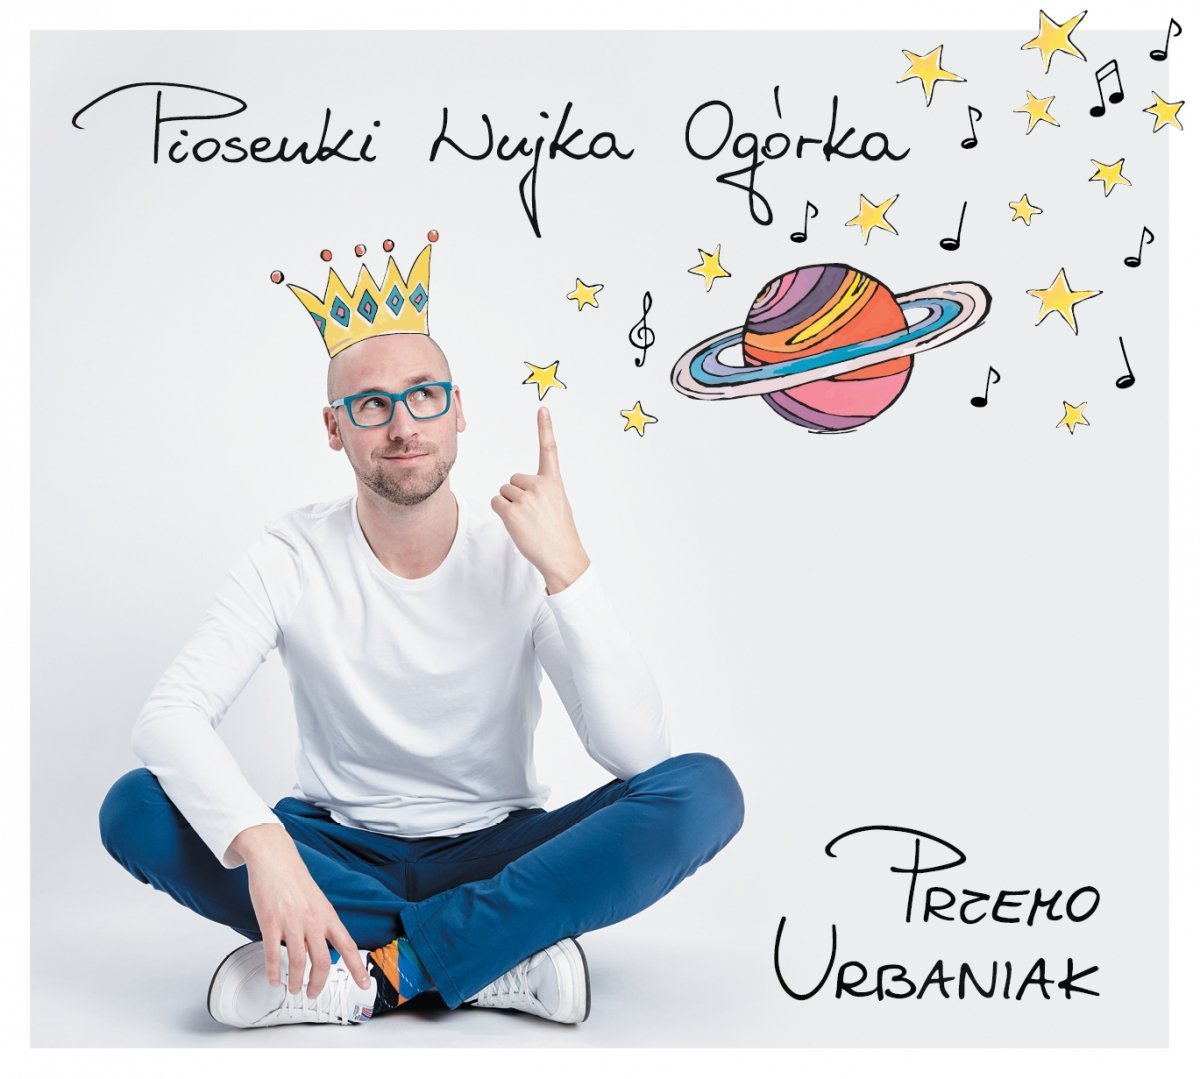 Przemo Urbaniak - Piosenki Wujka Ogórka - Płyta CD z Piosenkami ...